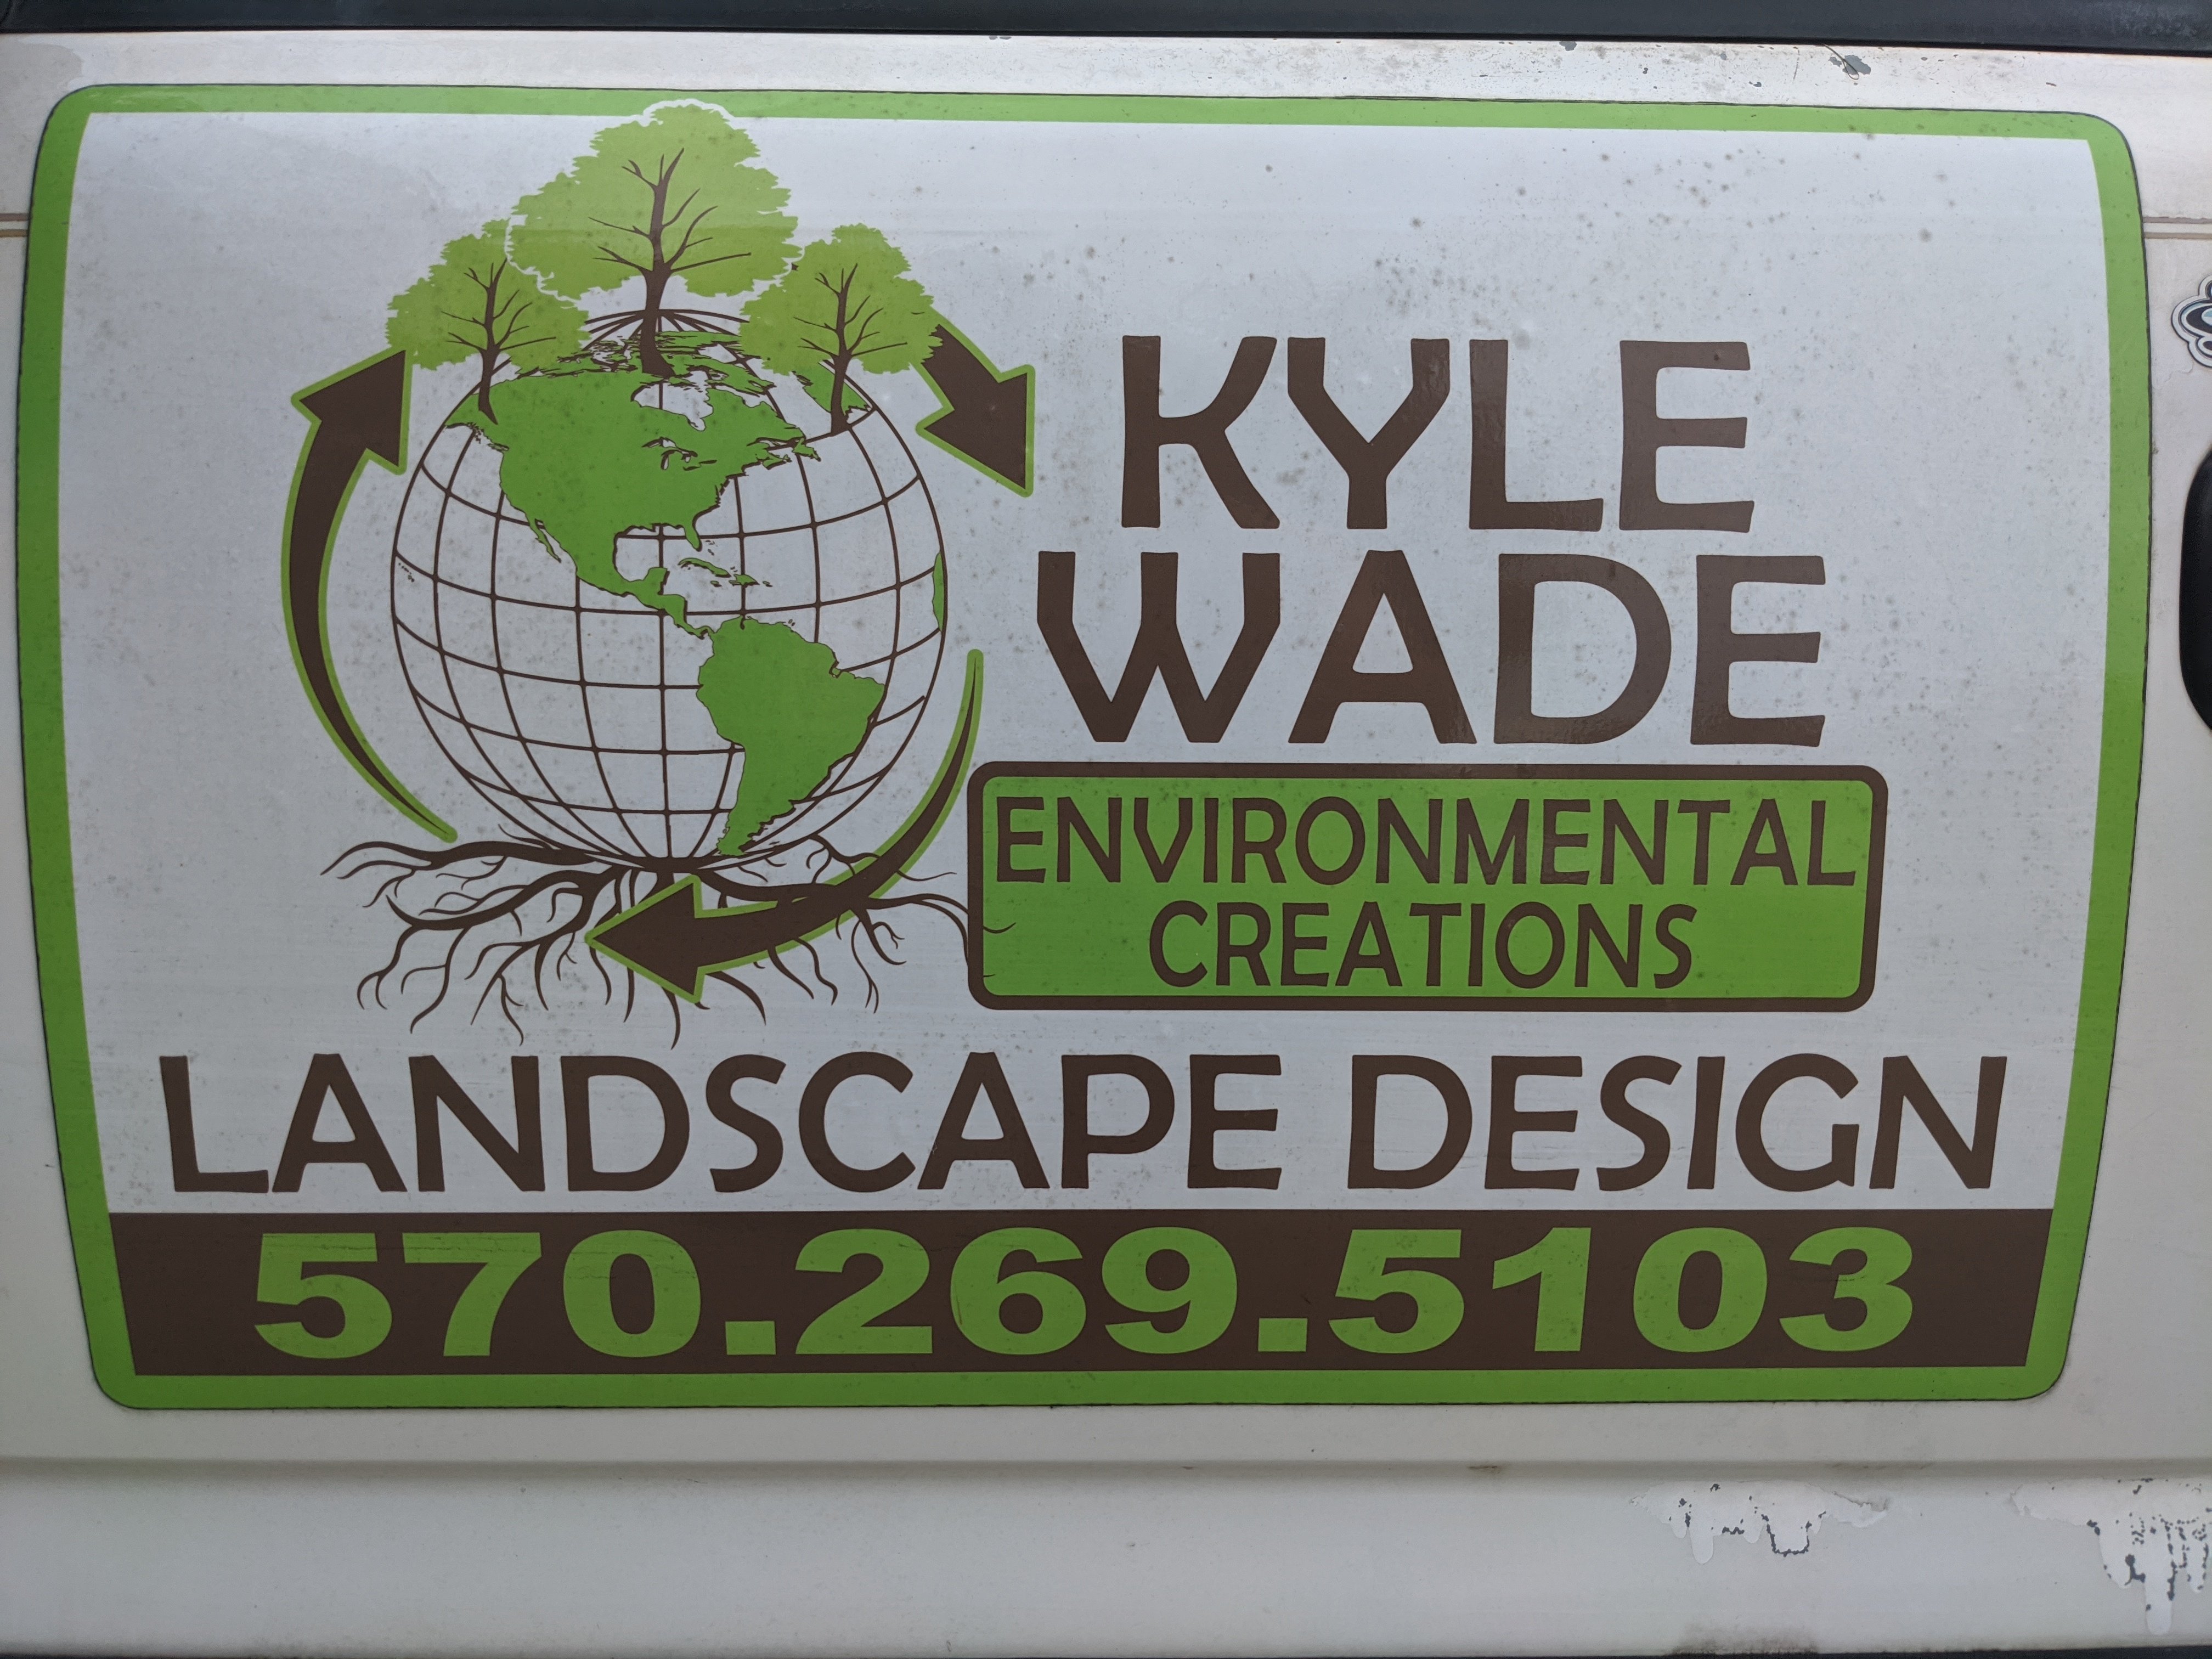 Environmental Creations by Kyle Wade Logo